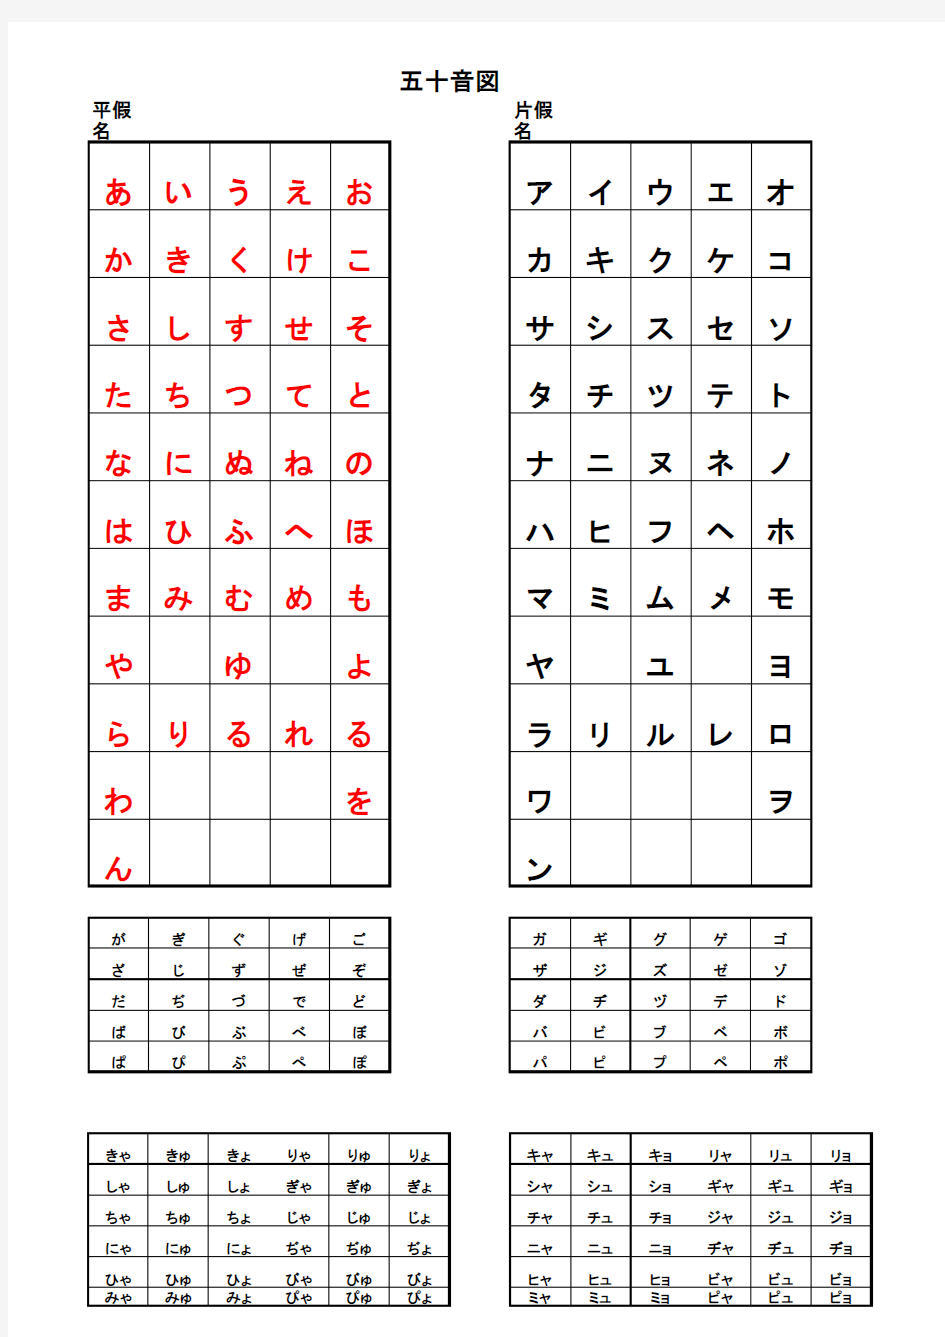 日语五十音图的标准写法